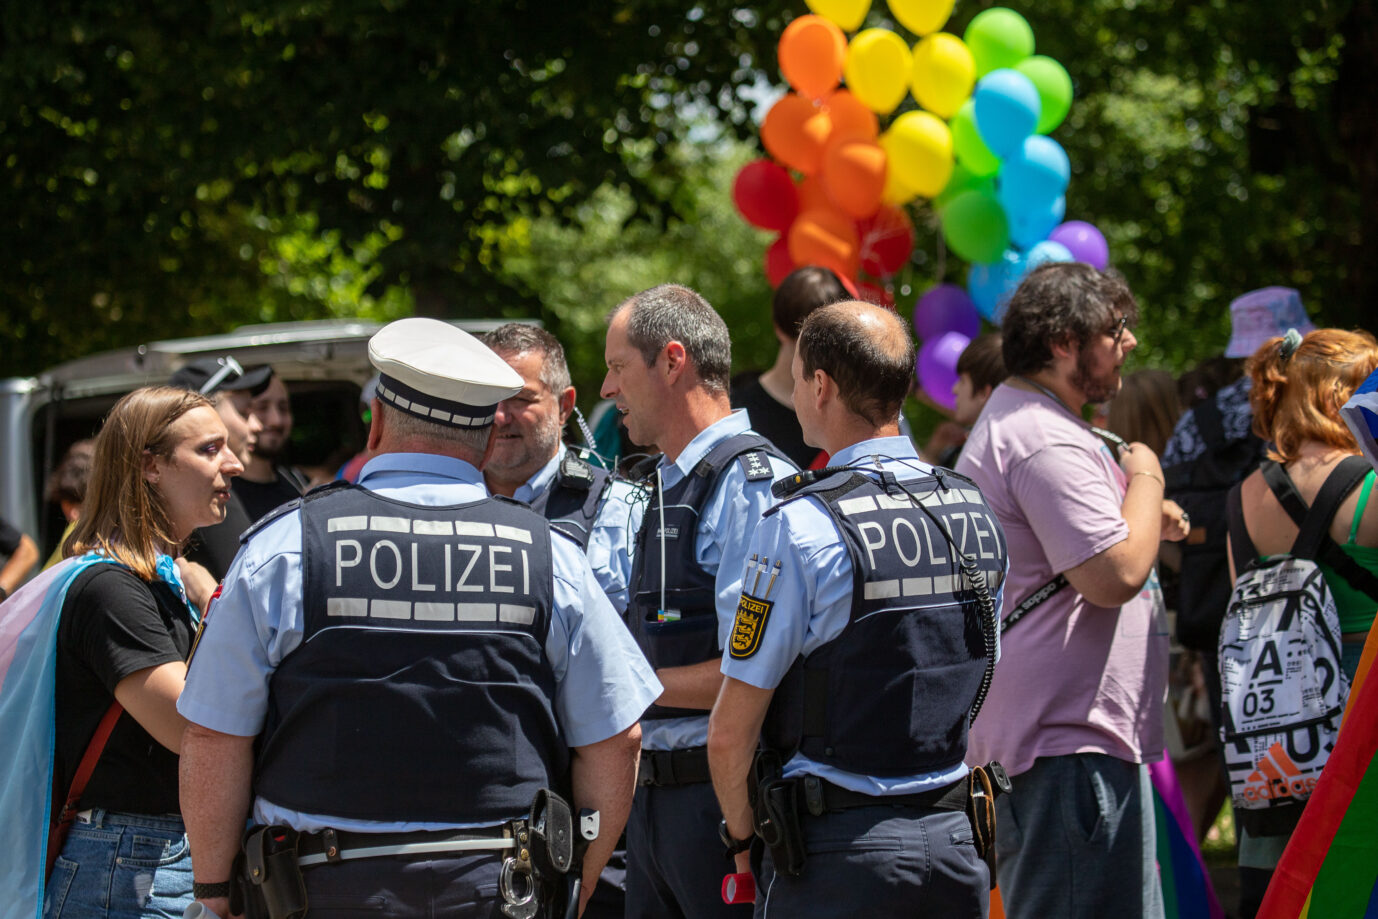 Symbolbild Polizei: Die Bundespolizei will beim kommenden Christopher Street Day ein Zeichen für Vielfalt setzen Foto:picture alliance / Eibner-Pressefoto | DROFITSCH/EIBNER